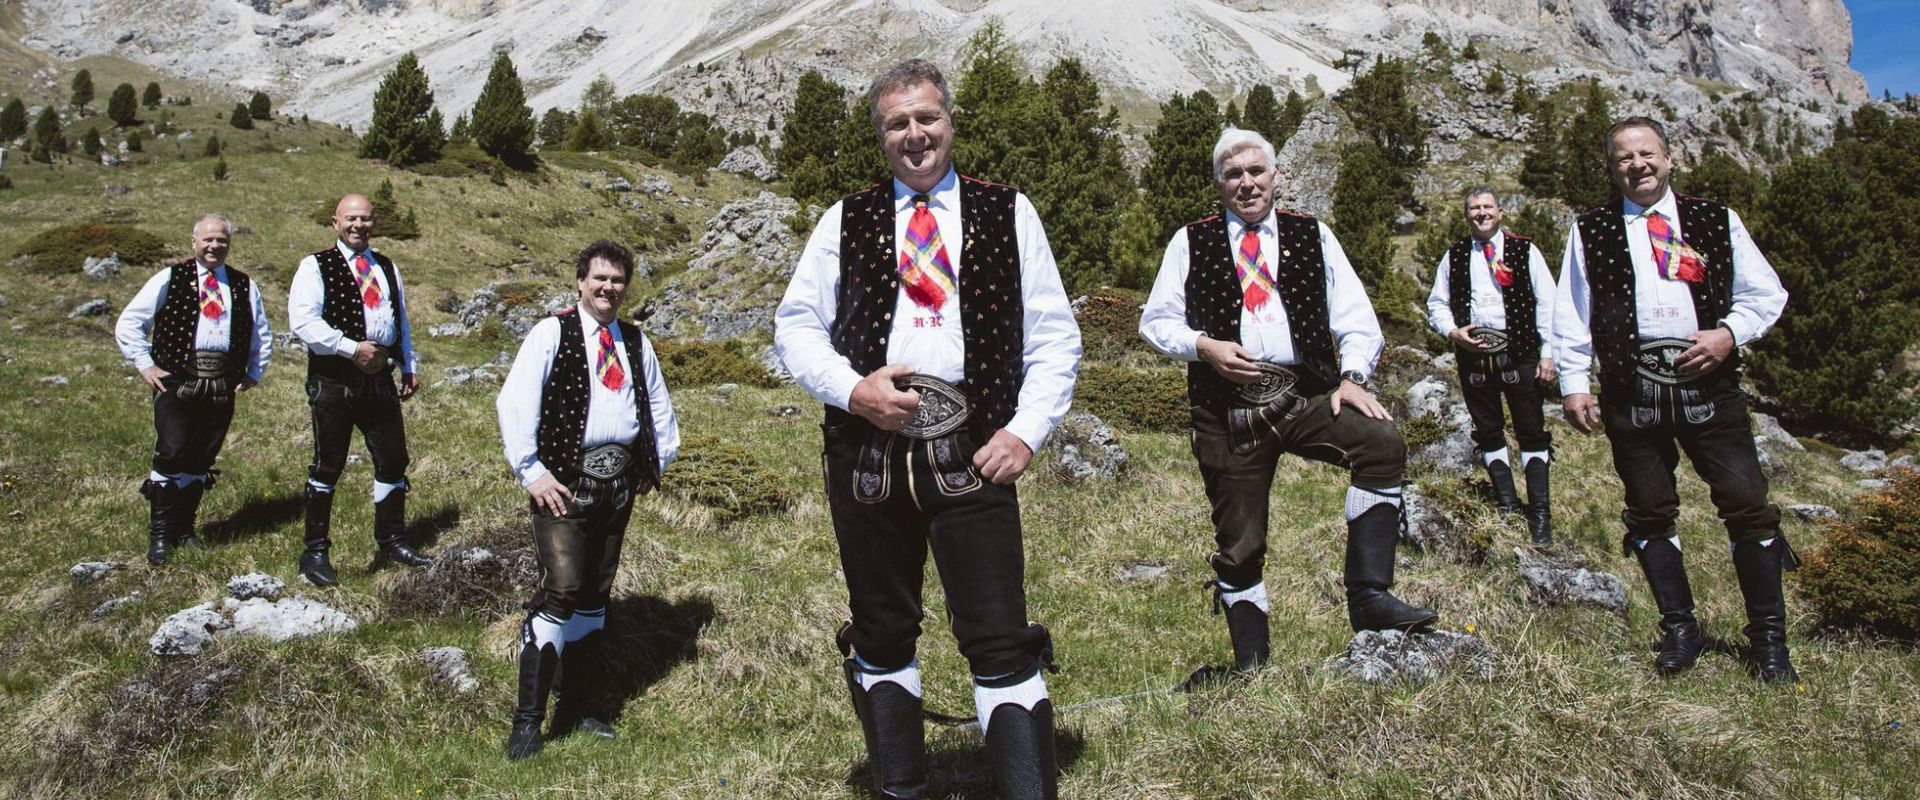 Die Musiker der Kastelruther Spatzen vor einem Alpen-Panorama.